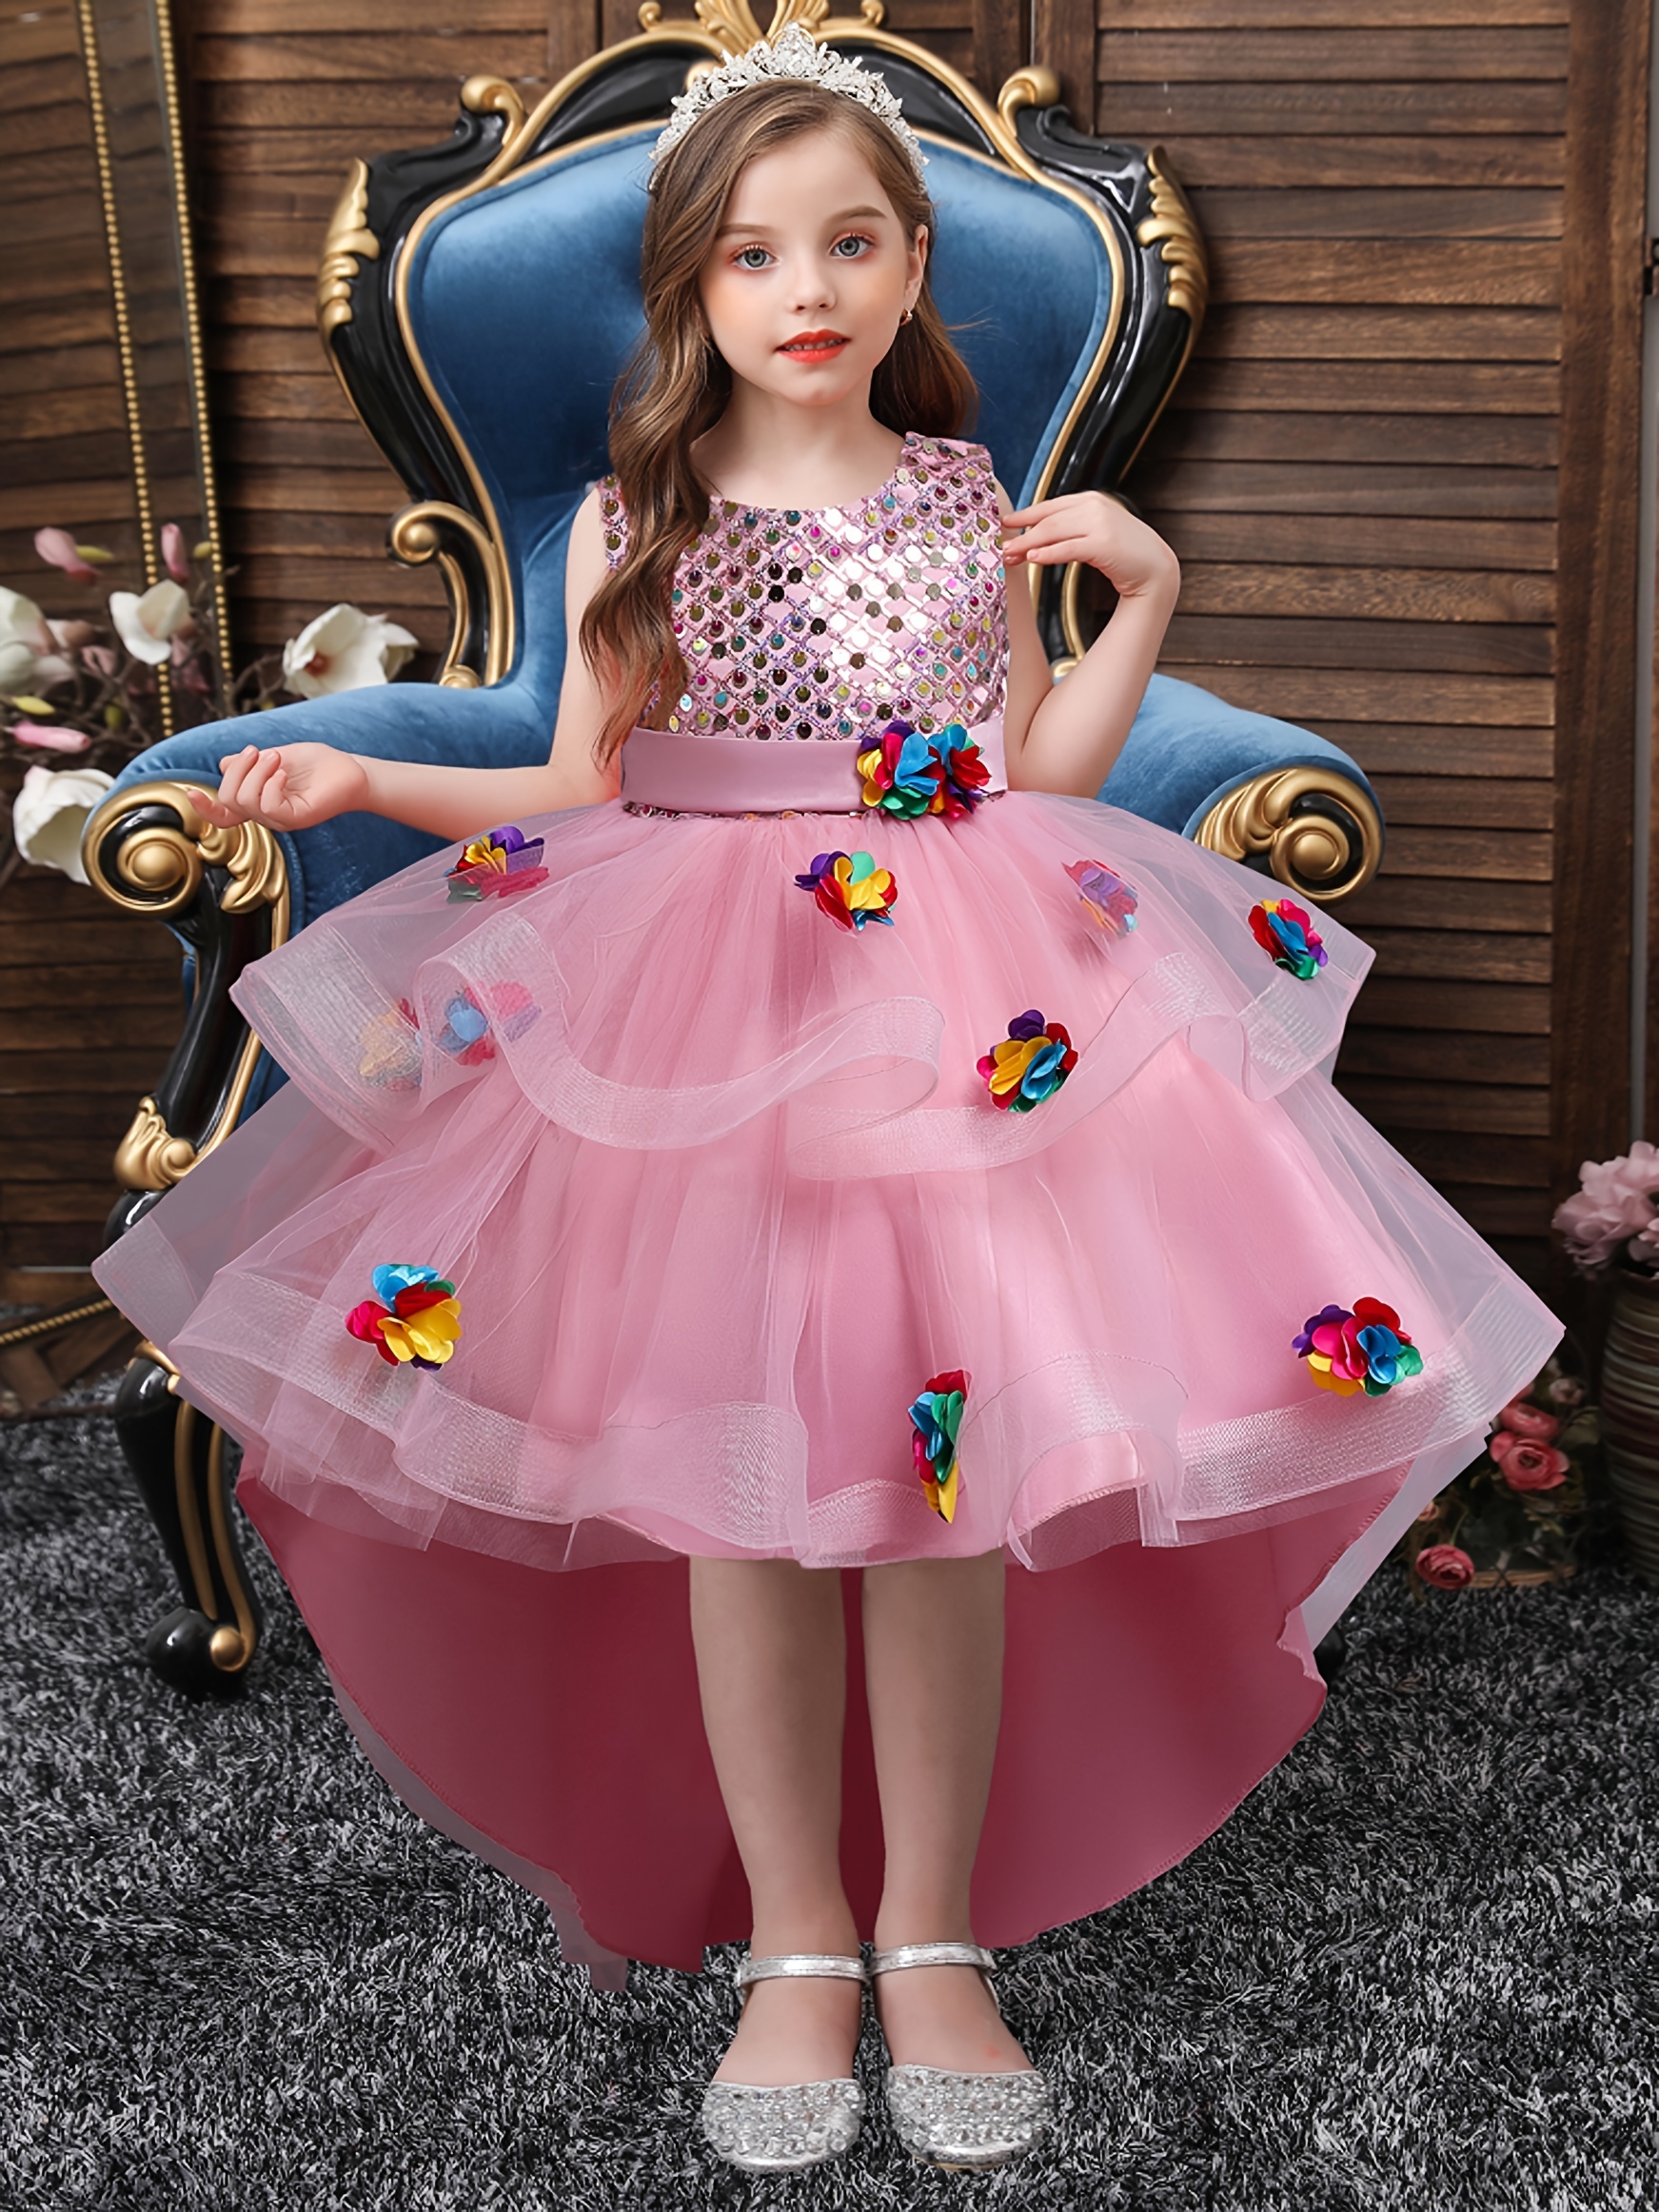 Disfraz de Cosplay de Barbie para niña, vestido de tutú de encaje